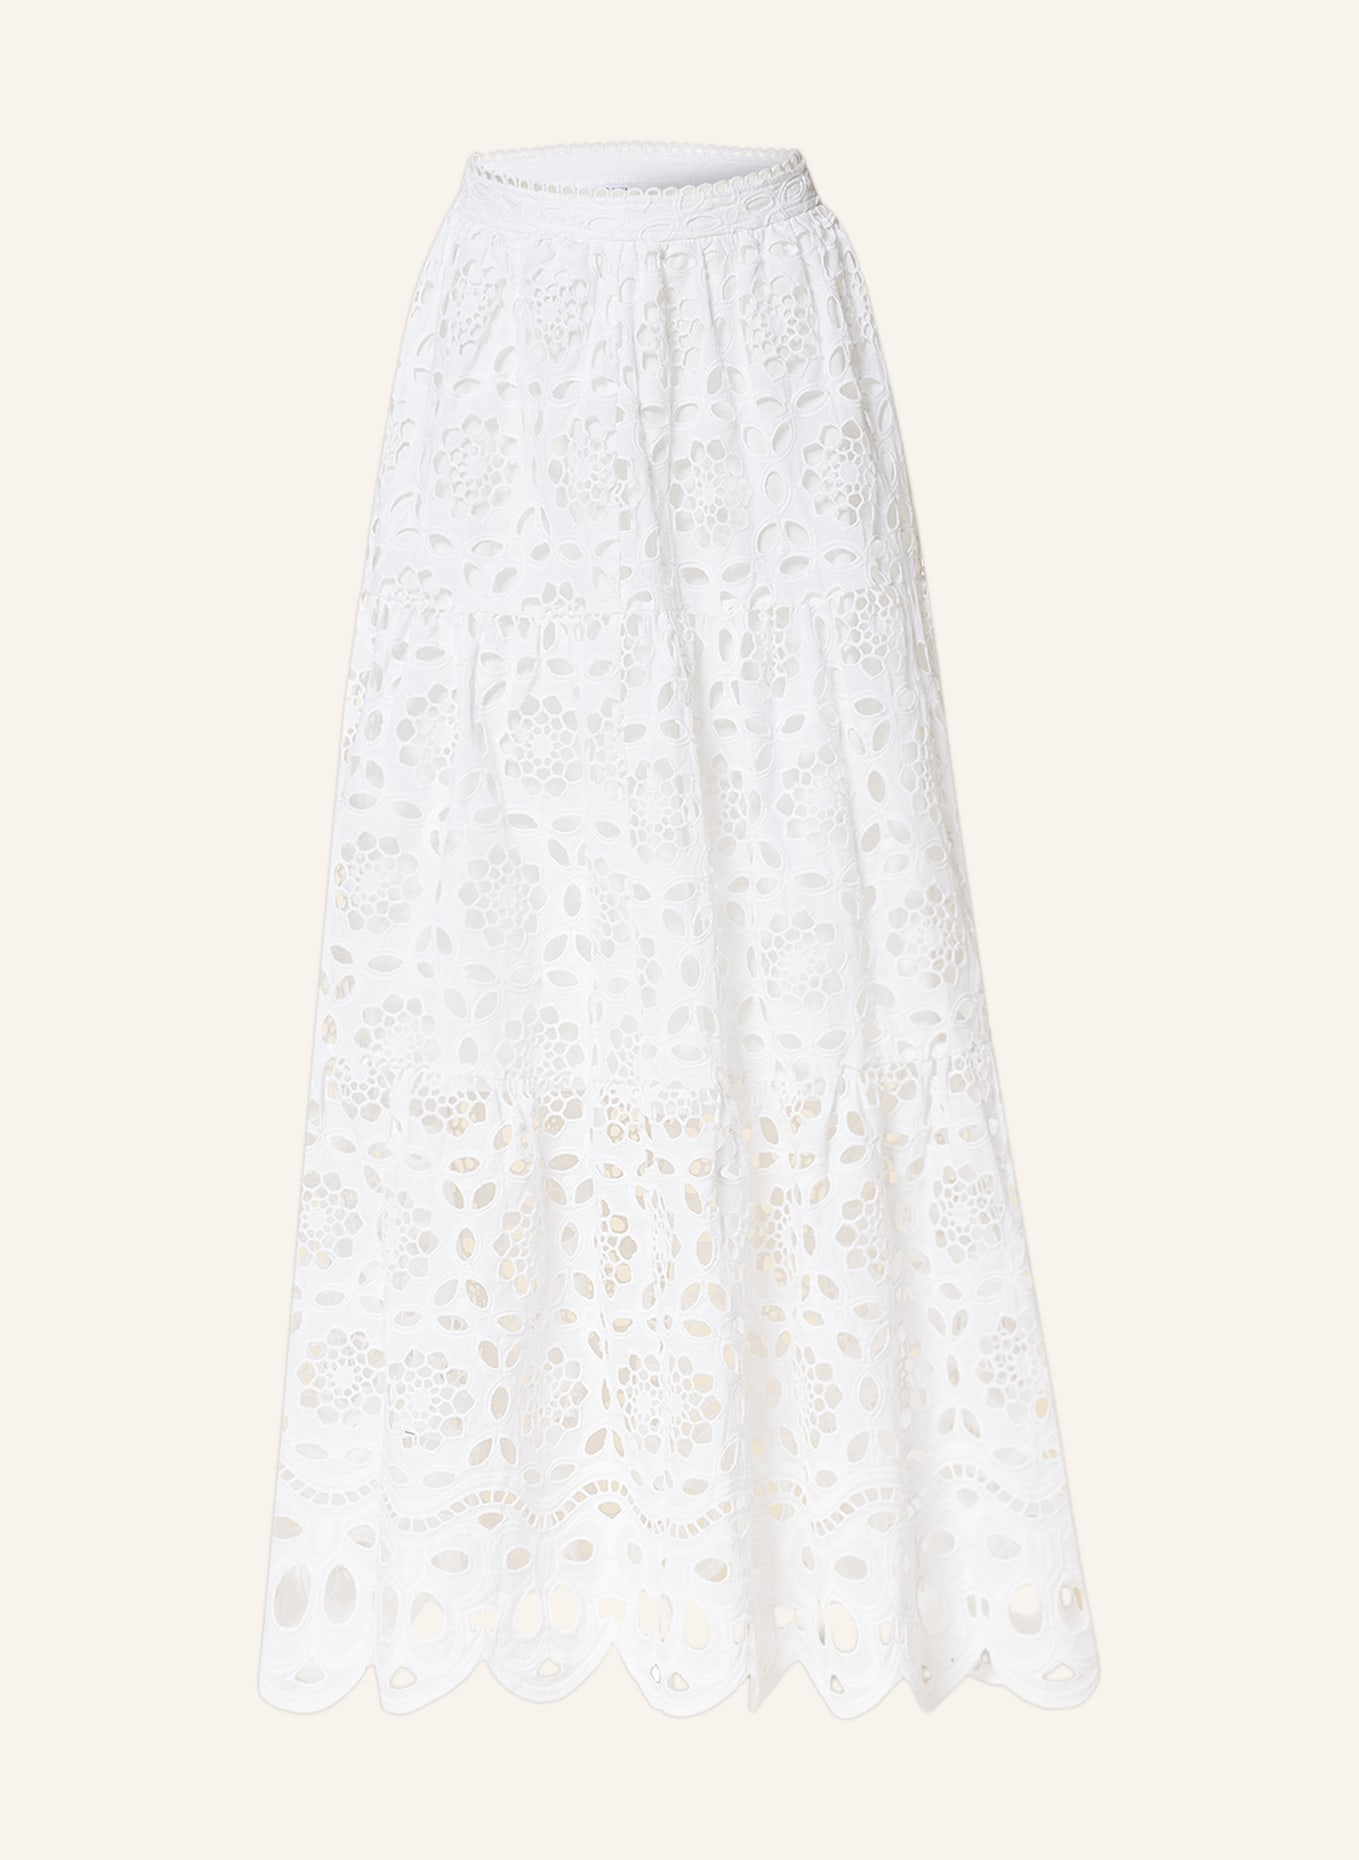 MRS & HUGS Skirt, Color: WHITE (Image 1)